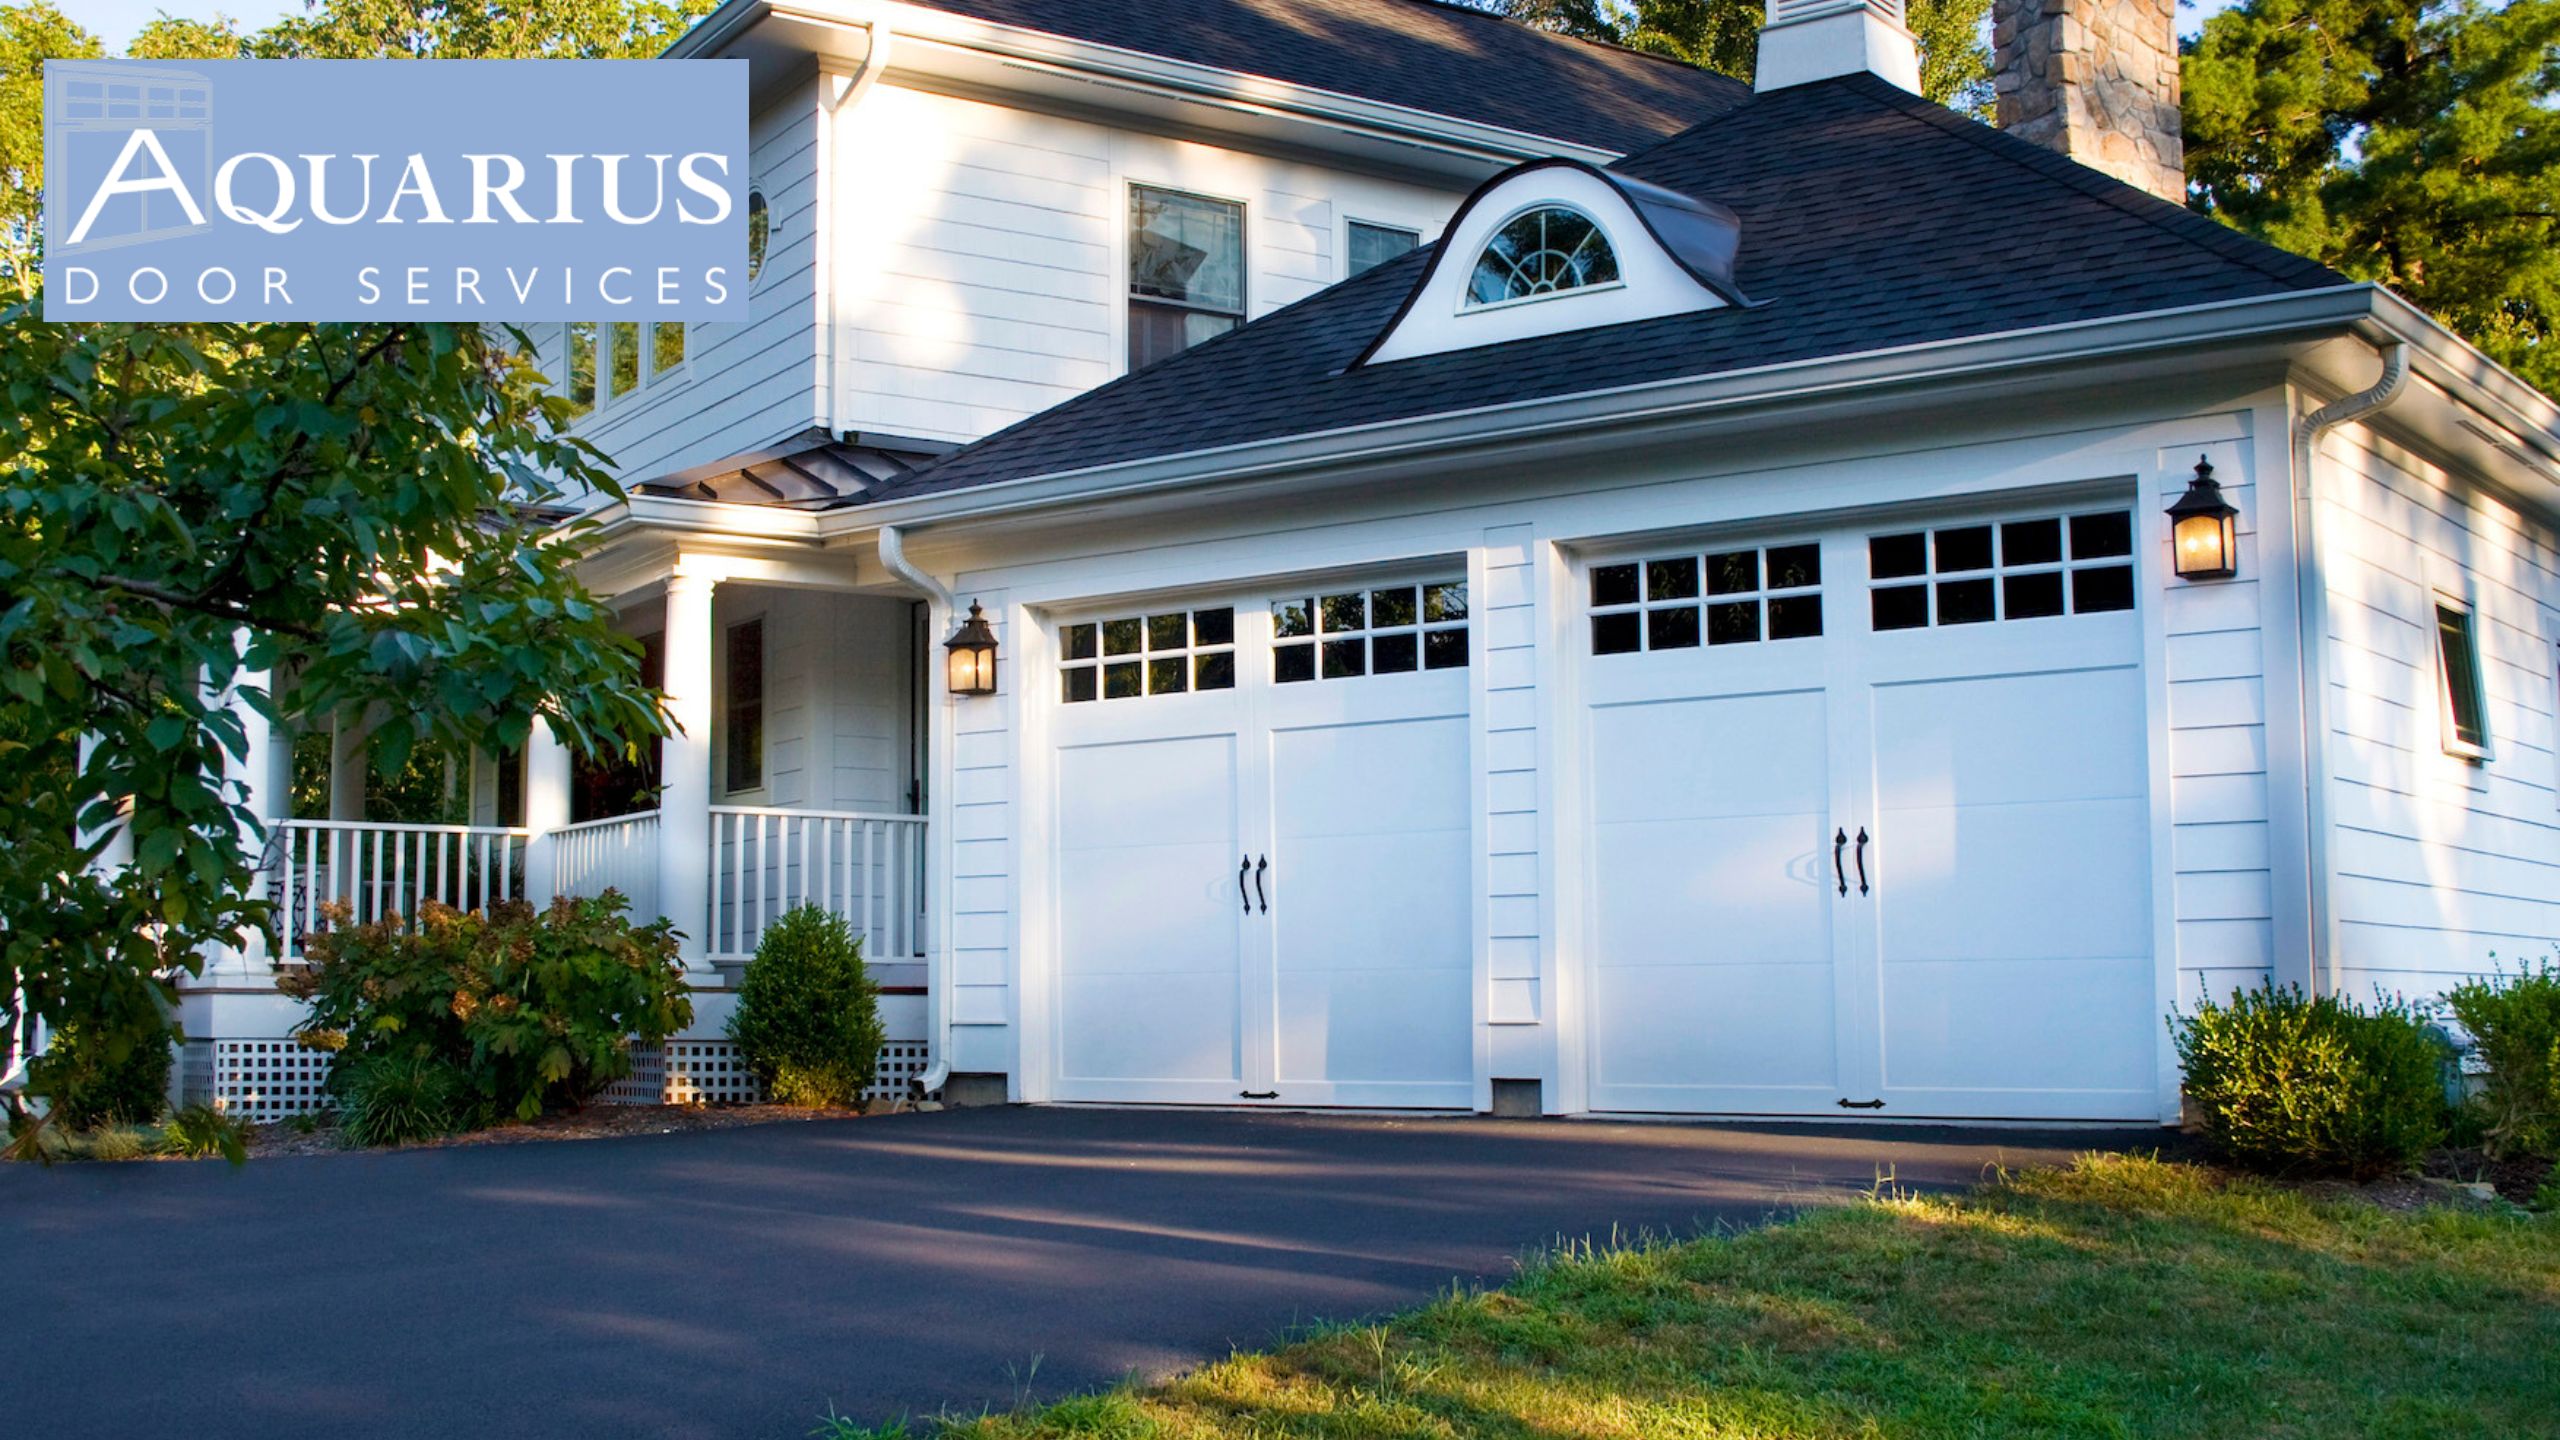 Aquarius Door Services, New Jersey’s Top Trusted Garage Door Company For Over 5 Decades